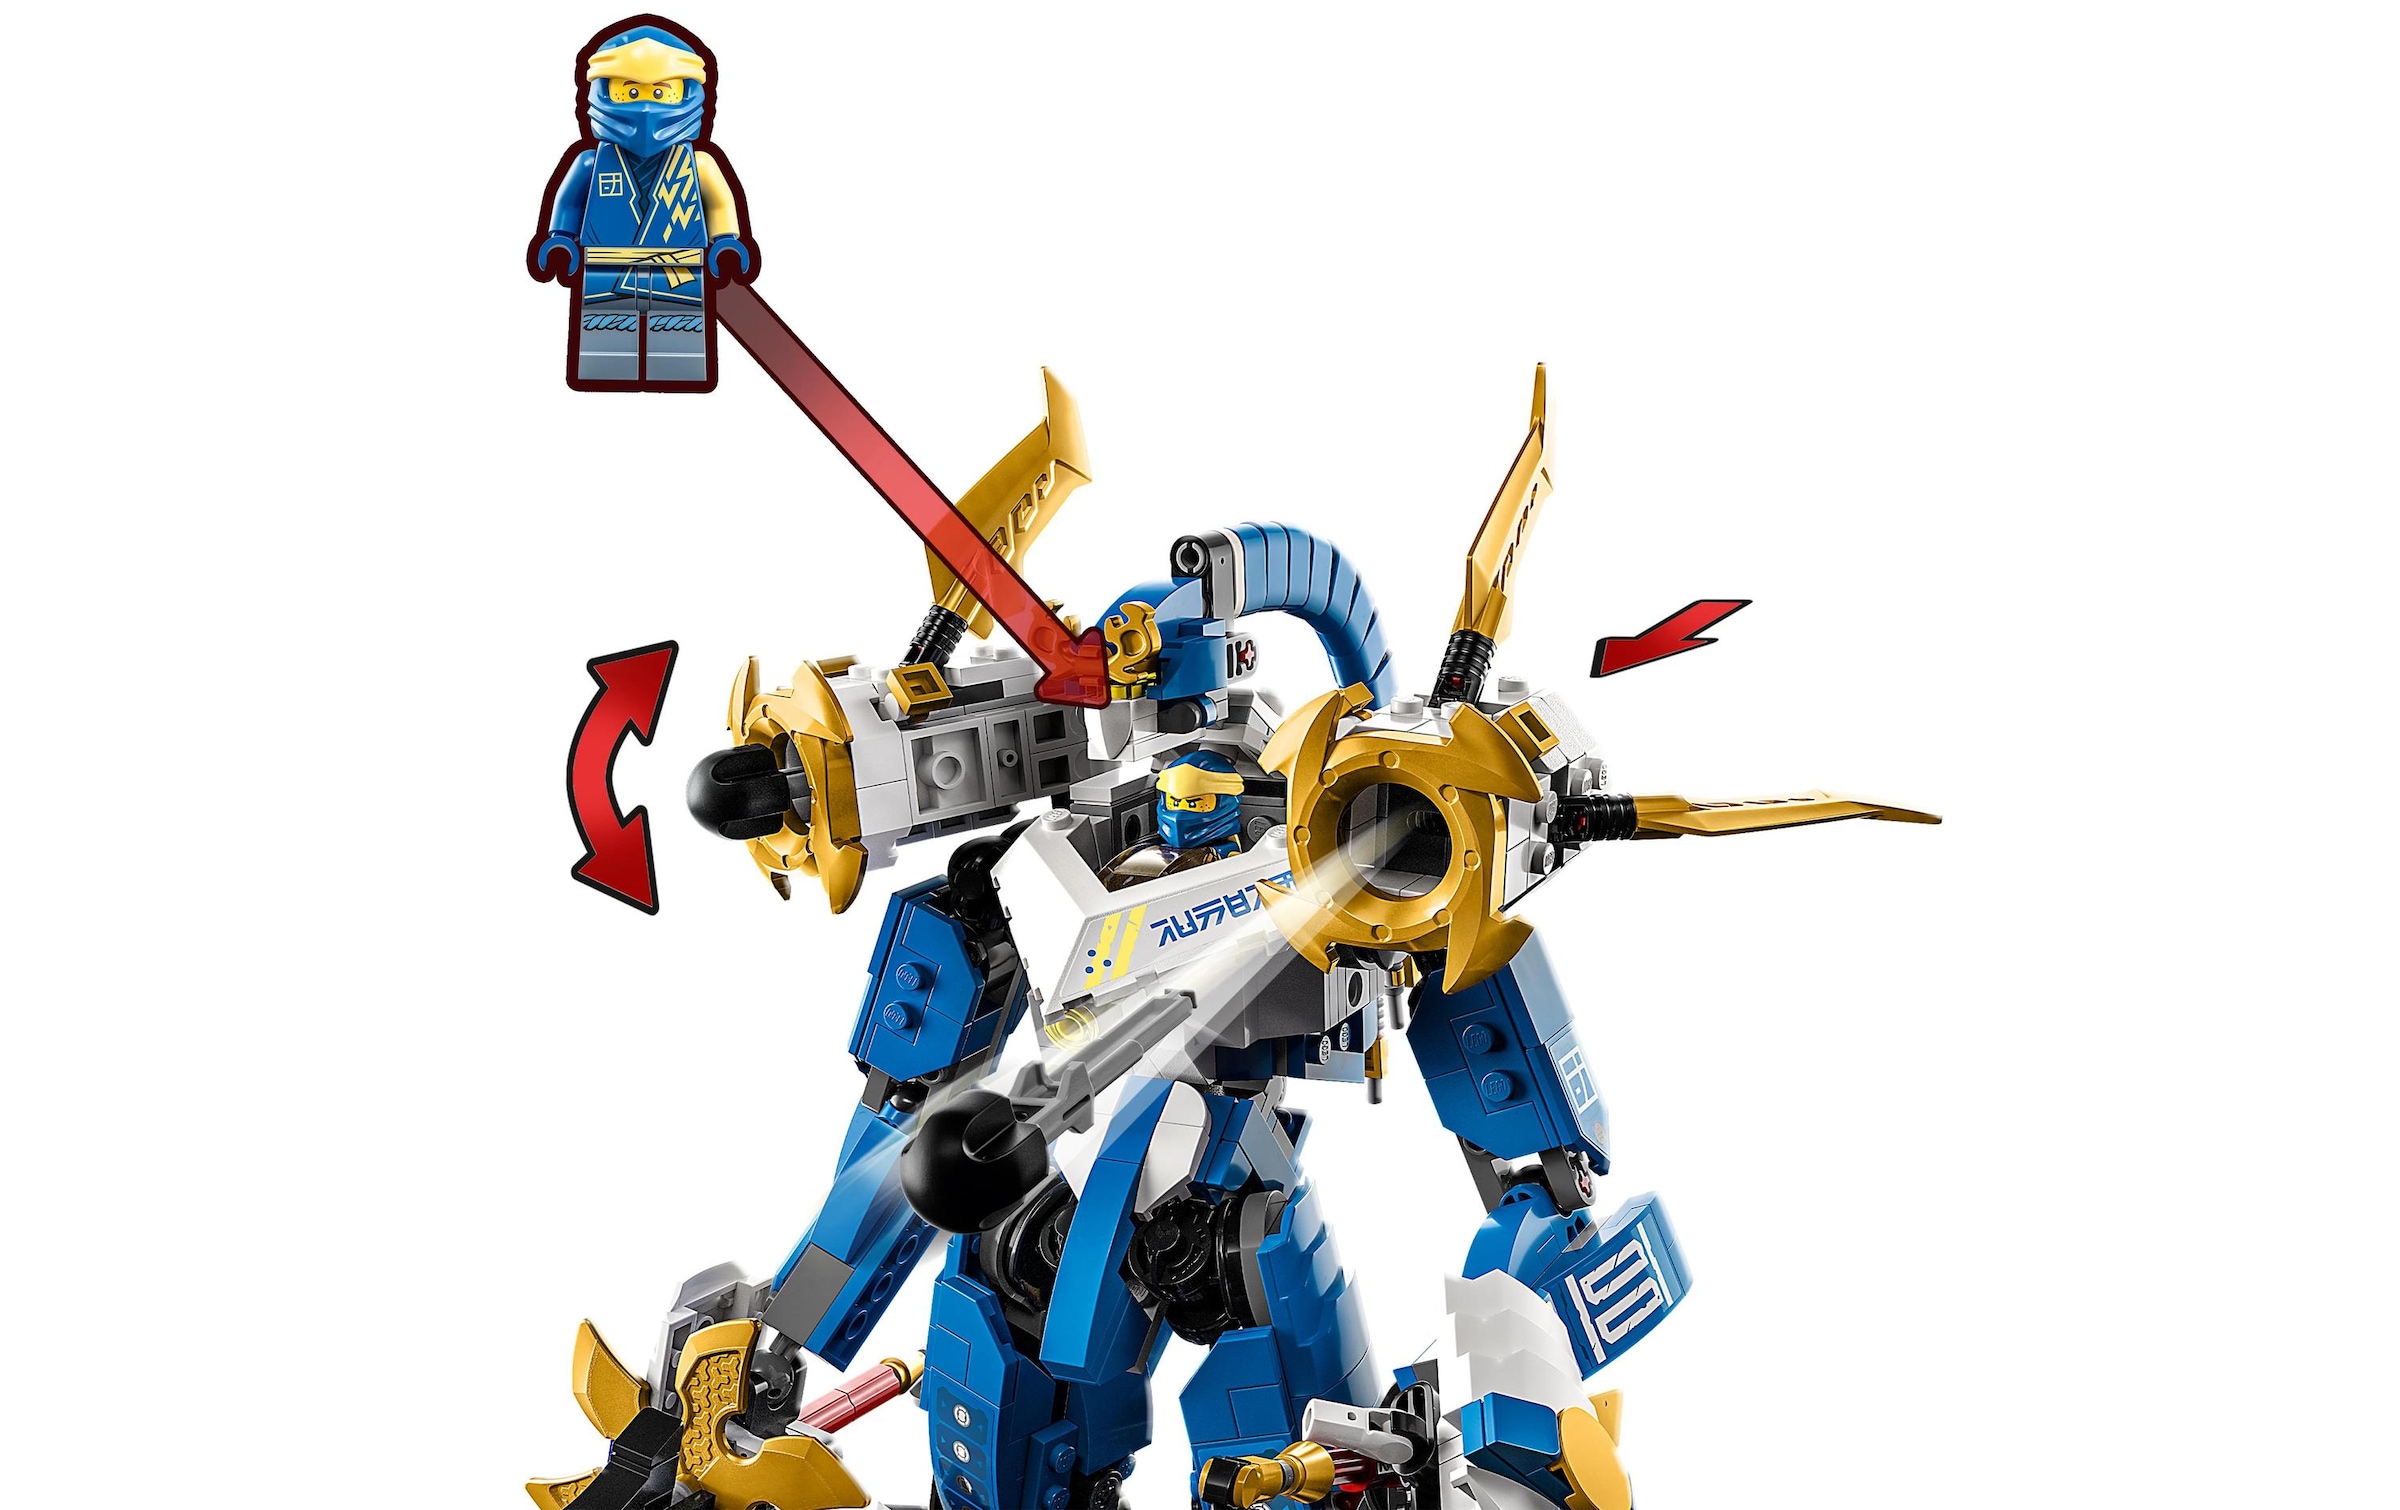 LEGO® Konstruktionsspielsteine »Jays Titan-Mech«, (794 St.)